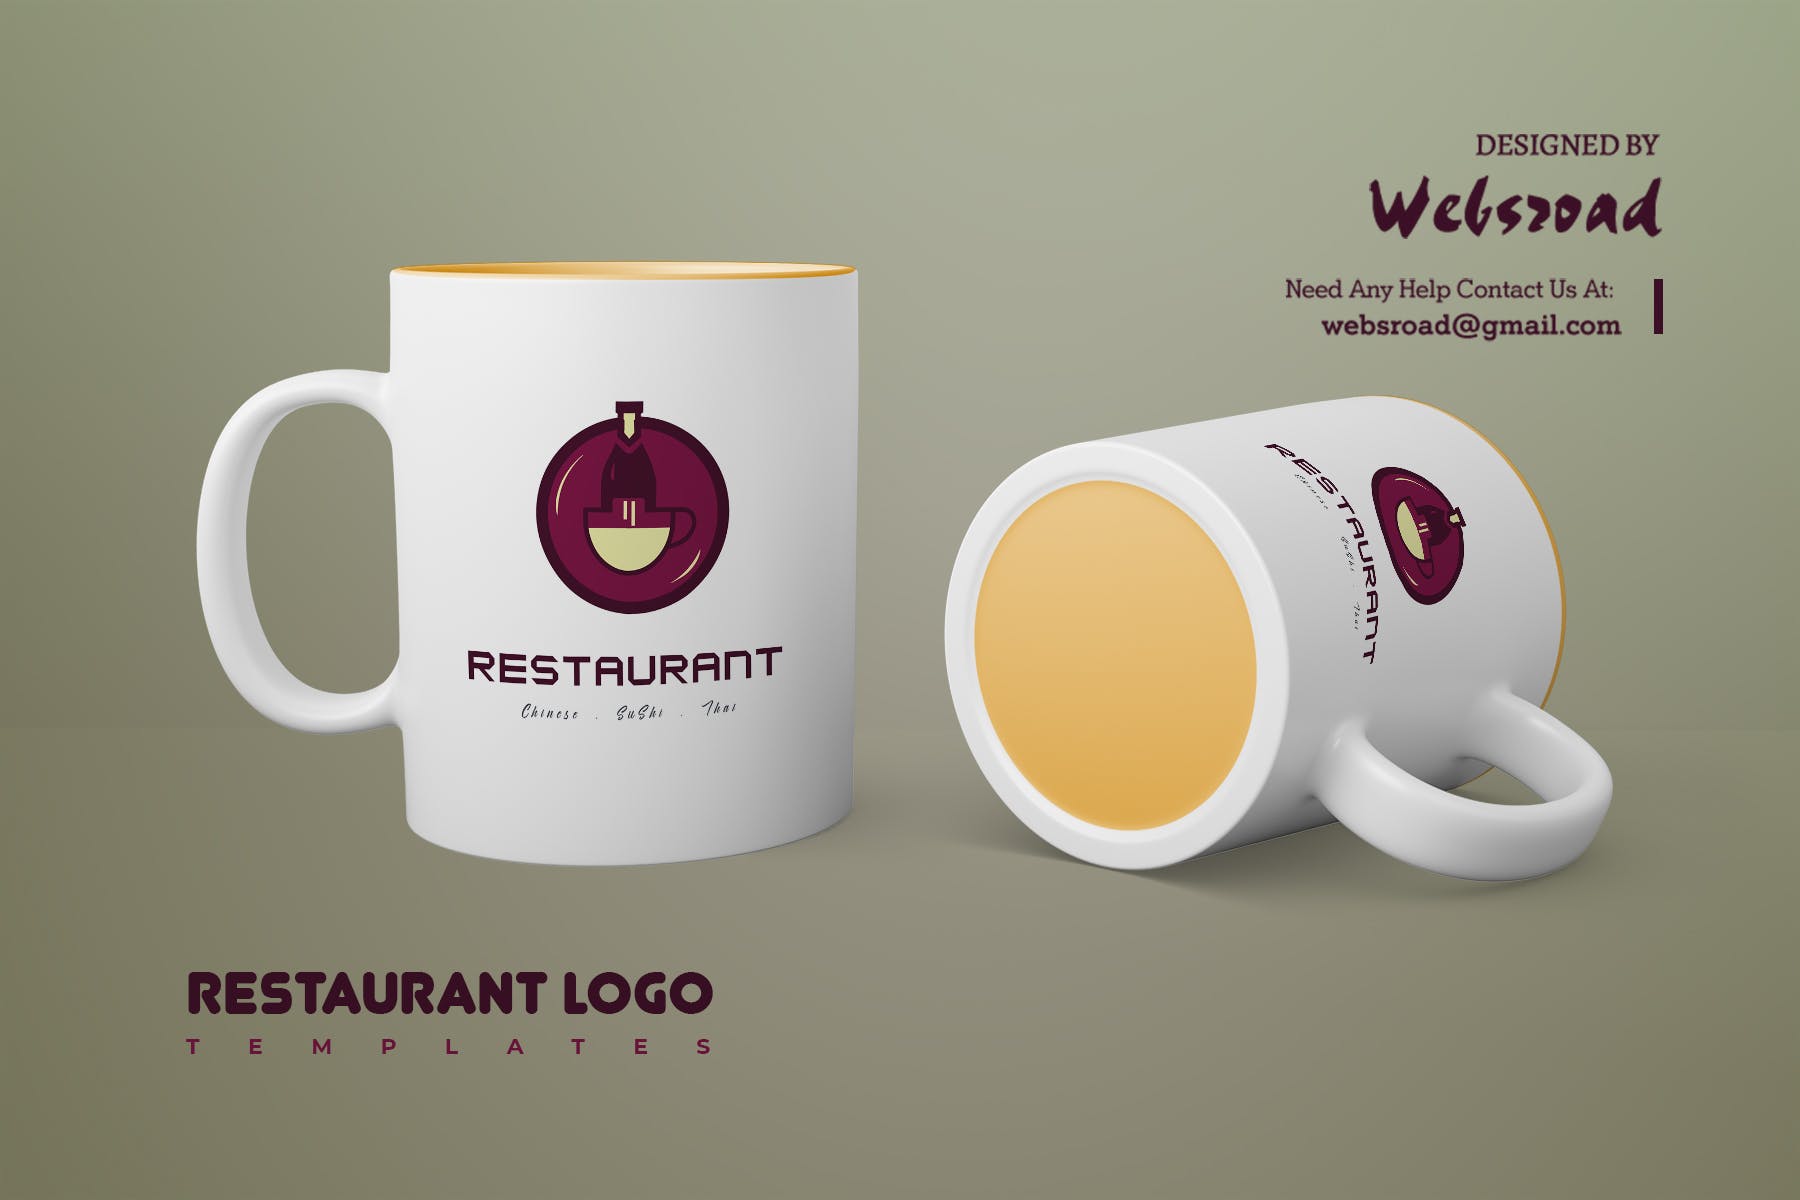 餐馆定制Logo设计蚂蚁素材精选模板 Restaurant Logo Templates插图